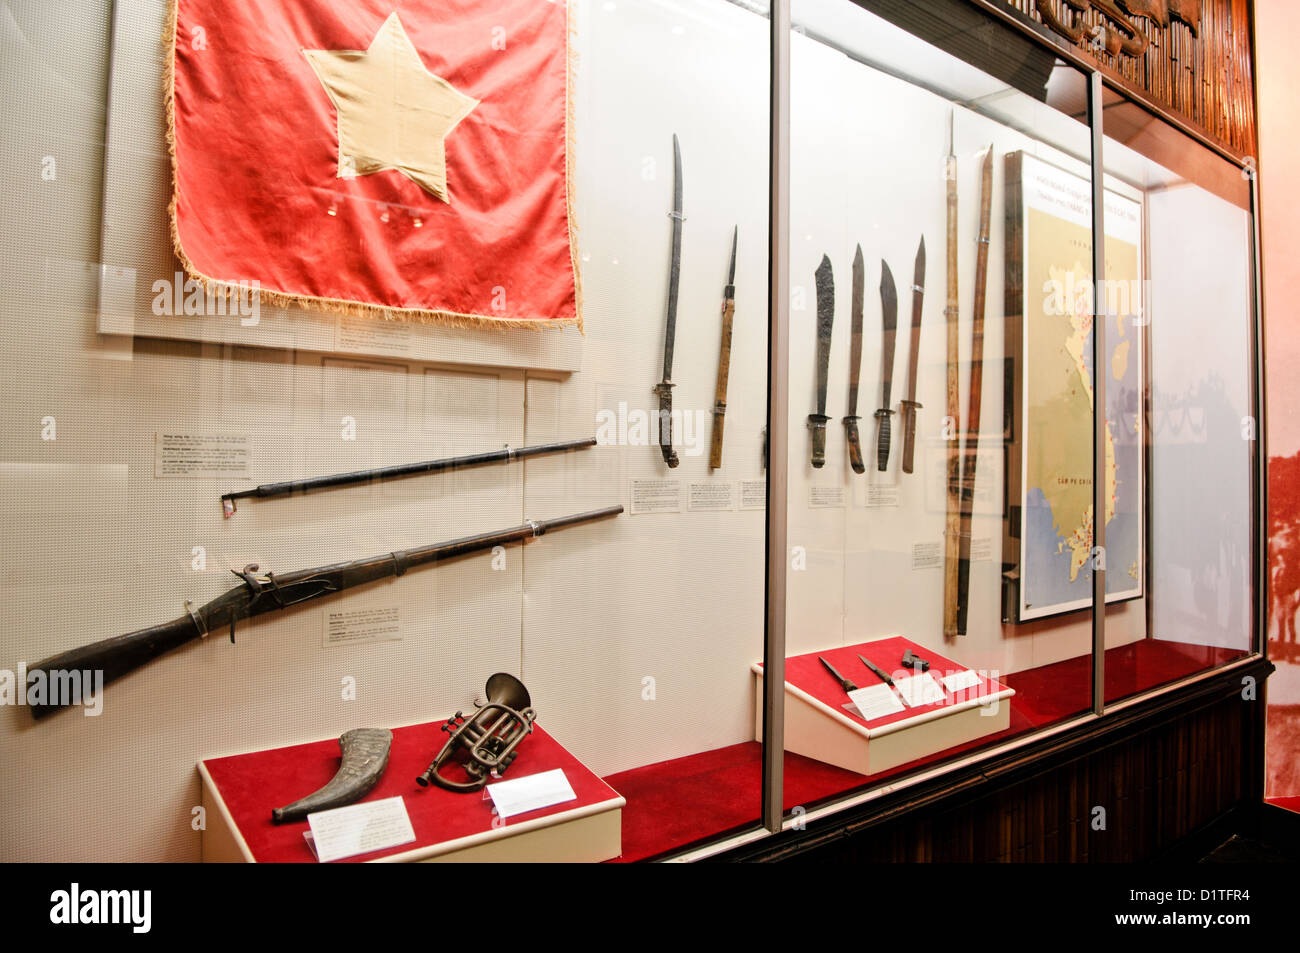 HANOI, Vietnam - Eine Ausstellung mit Waffen in den revolutionären Kampf verwendet. Das Museum der Vietnamesischen Revolution in der Tong Dan Gegend von Hanoi, nicht weit vom Hoan Kiem See, wurde 1959 gegründet und ist mit der Geschichte der sozialistischen Revolutionären Bewegung in Vietnam gewidmet. Stockfoto